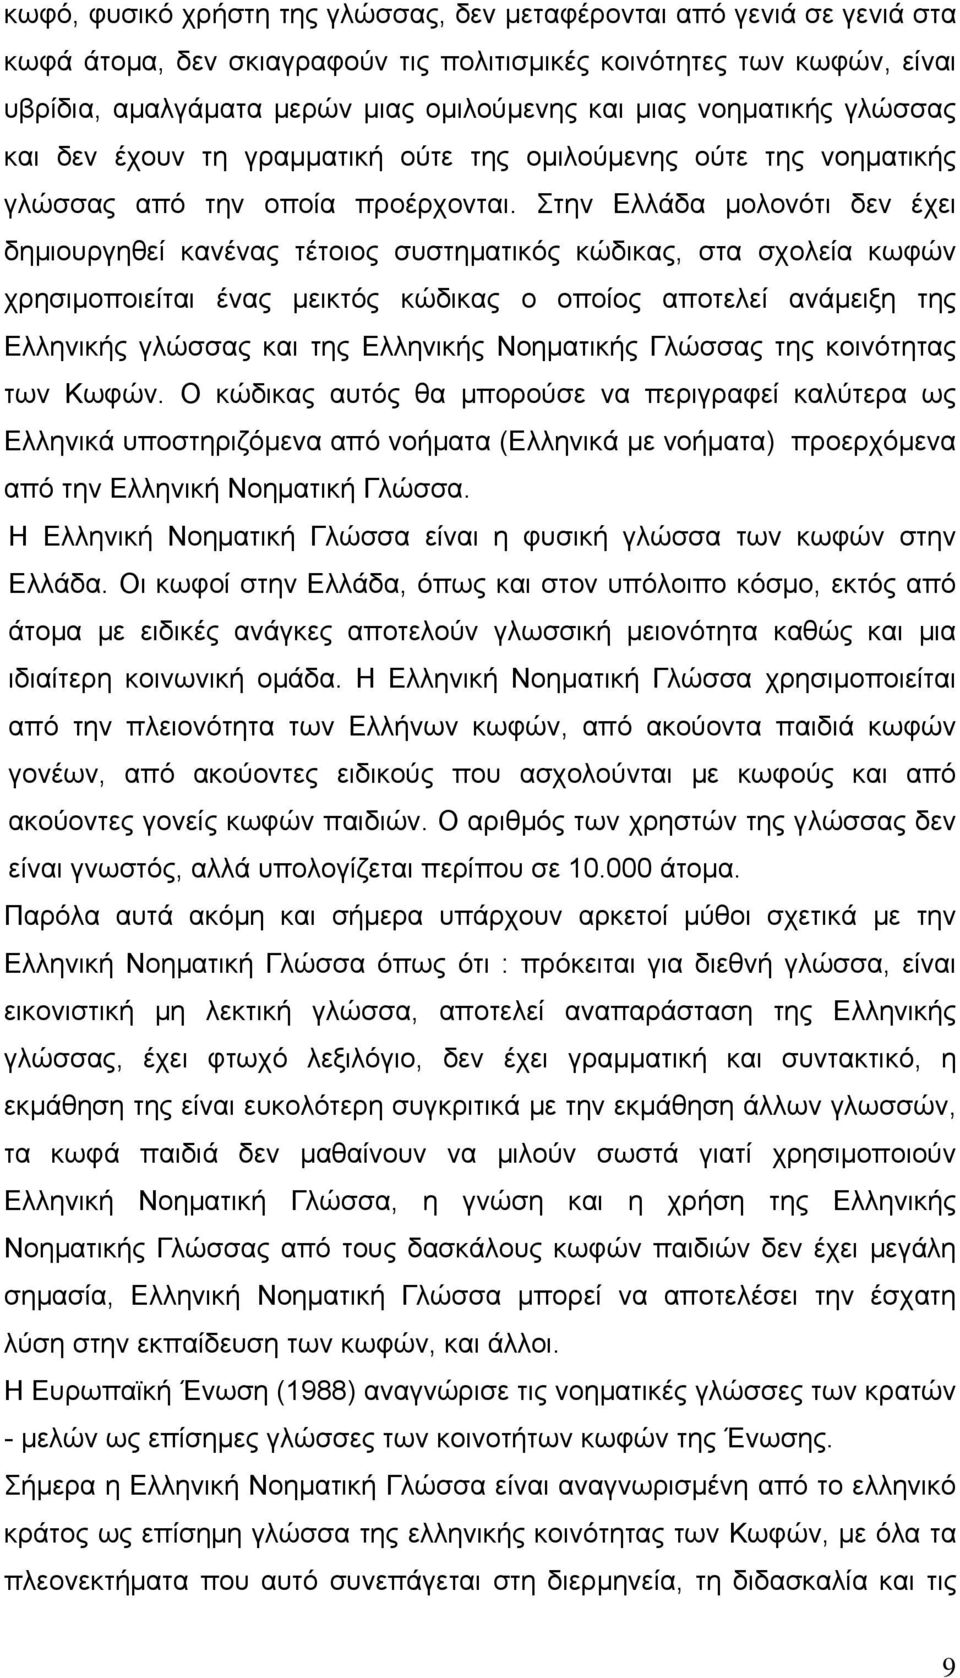 Στην Ελλάδα μολονότι δεν έχει δημιουργηθεί κανένας τέτοιος συστηματικός κώδικας, στα σχολεία κωφών χρησιμοποιείται ένας μεικτός κώδικας ο οποίος αποτελεί ανάμειξη της Ελληνικής γλώσσας και της